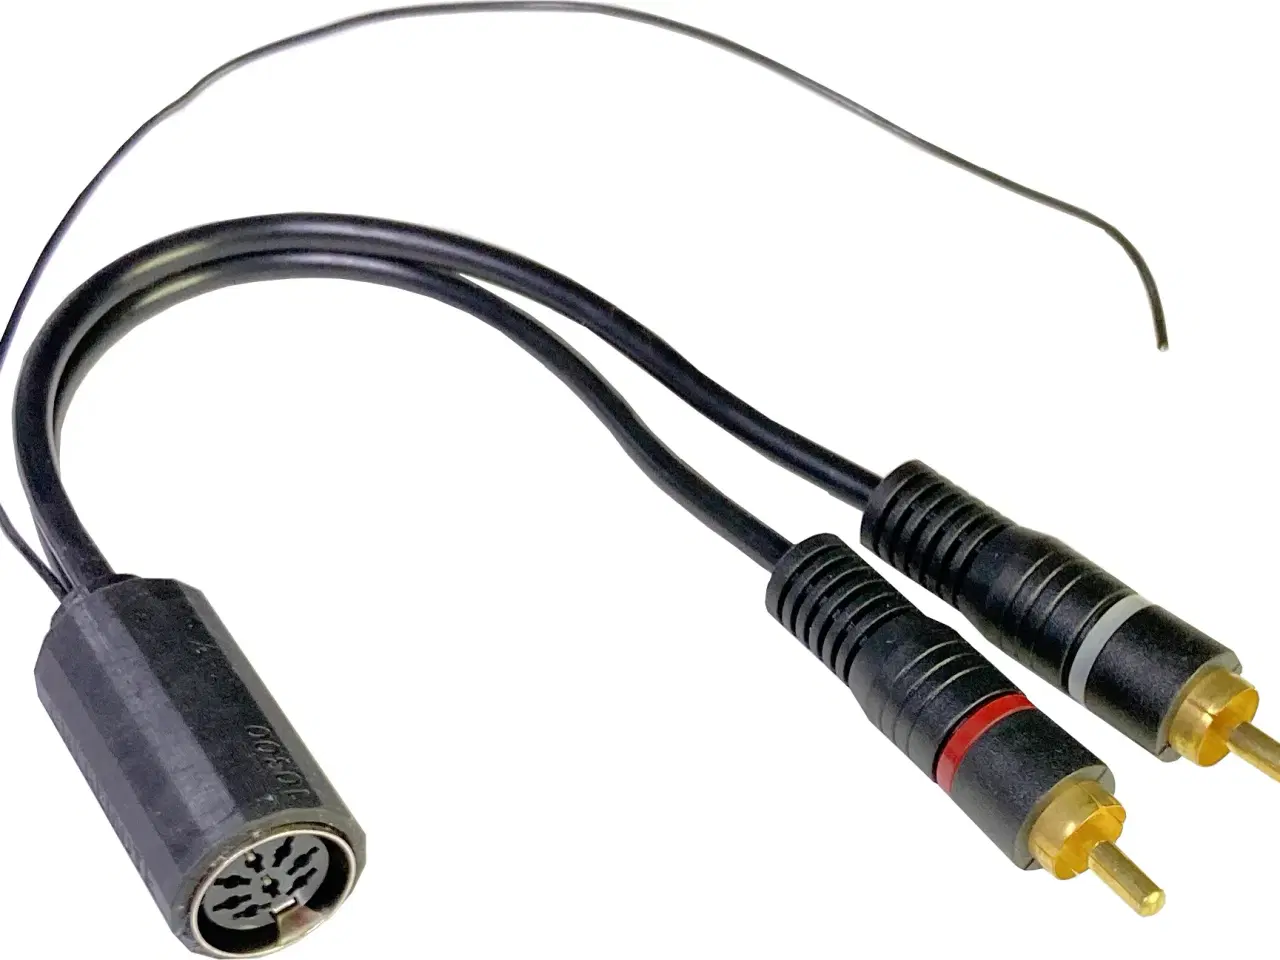 Billede 1 - B&O connector. DIN til RCA med stelledning.